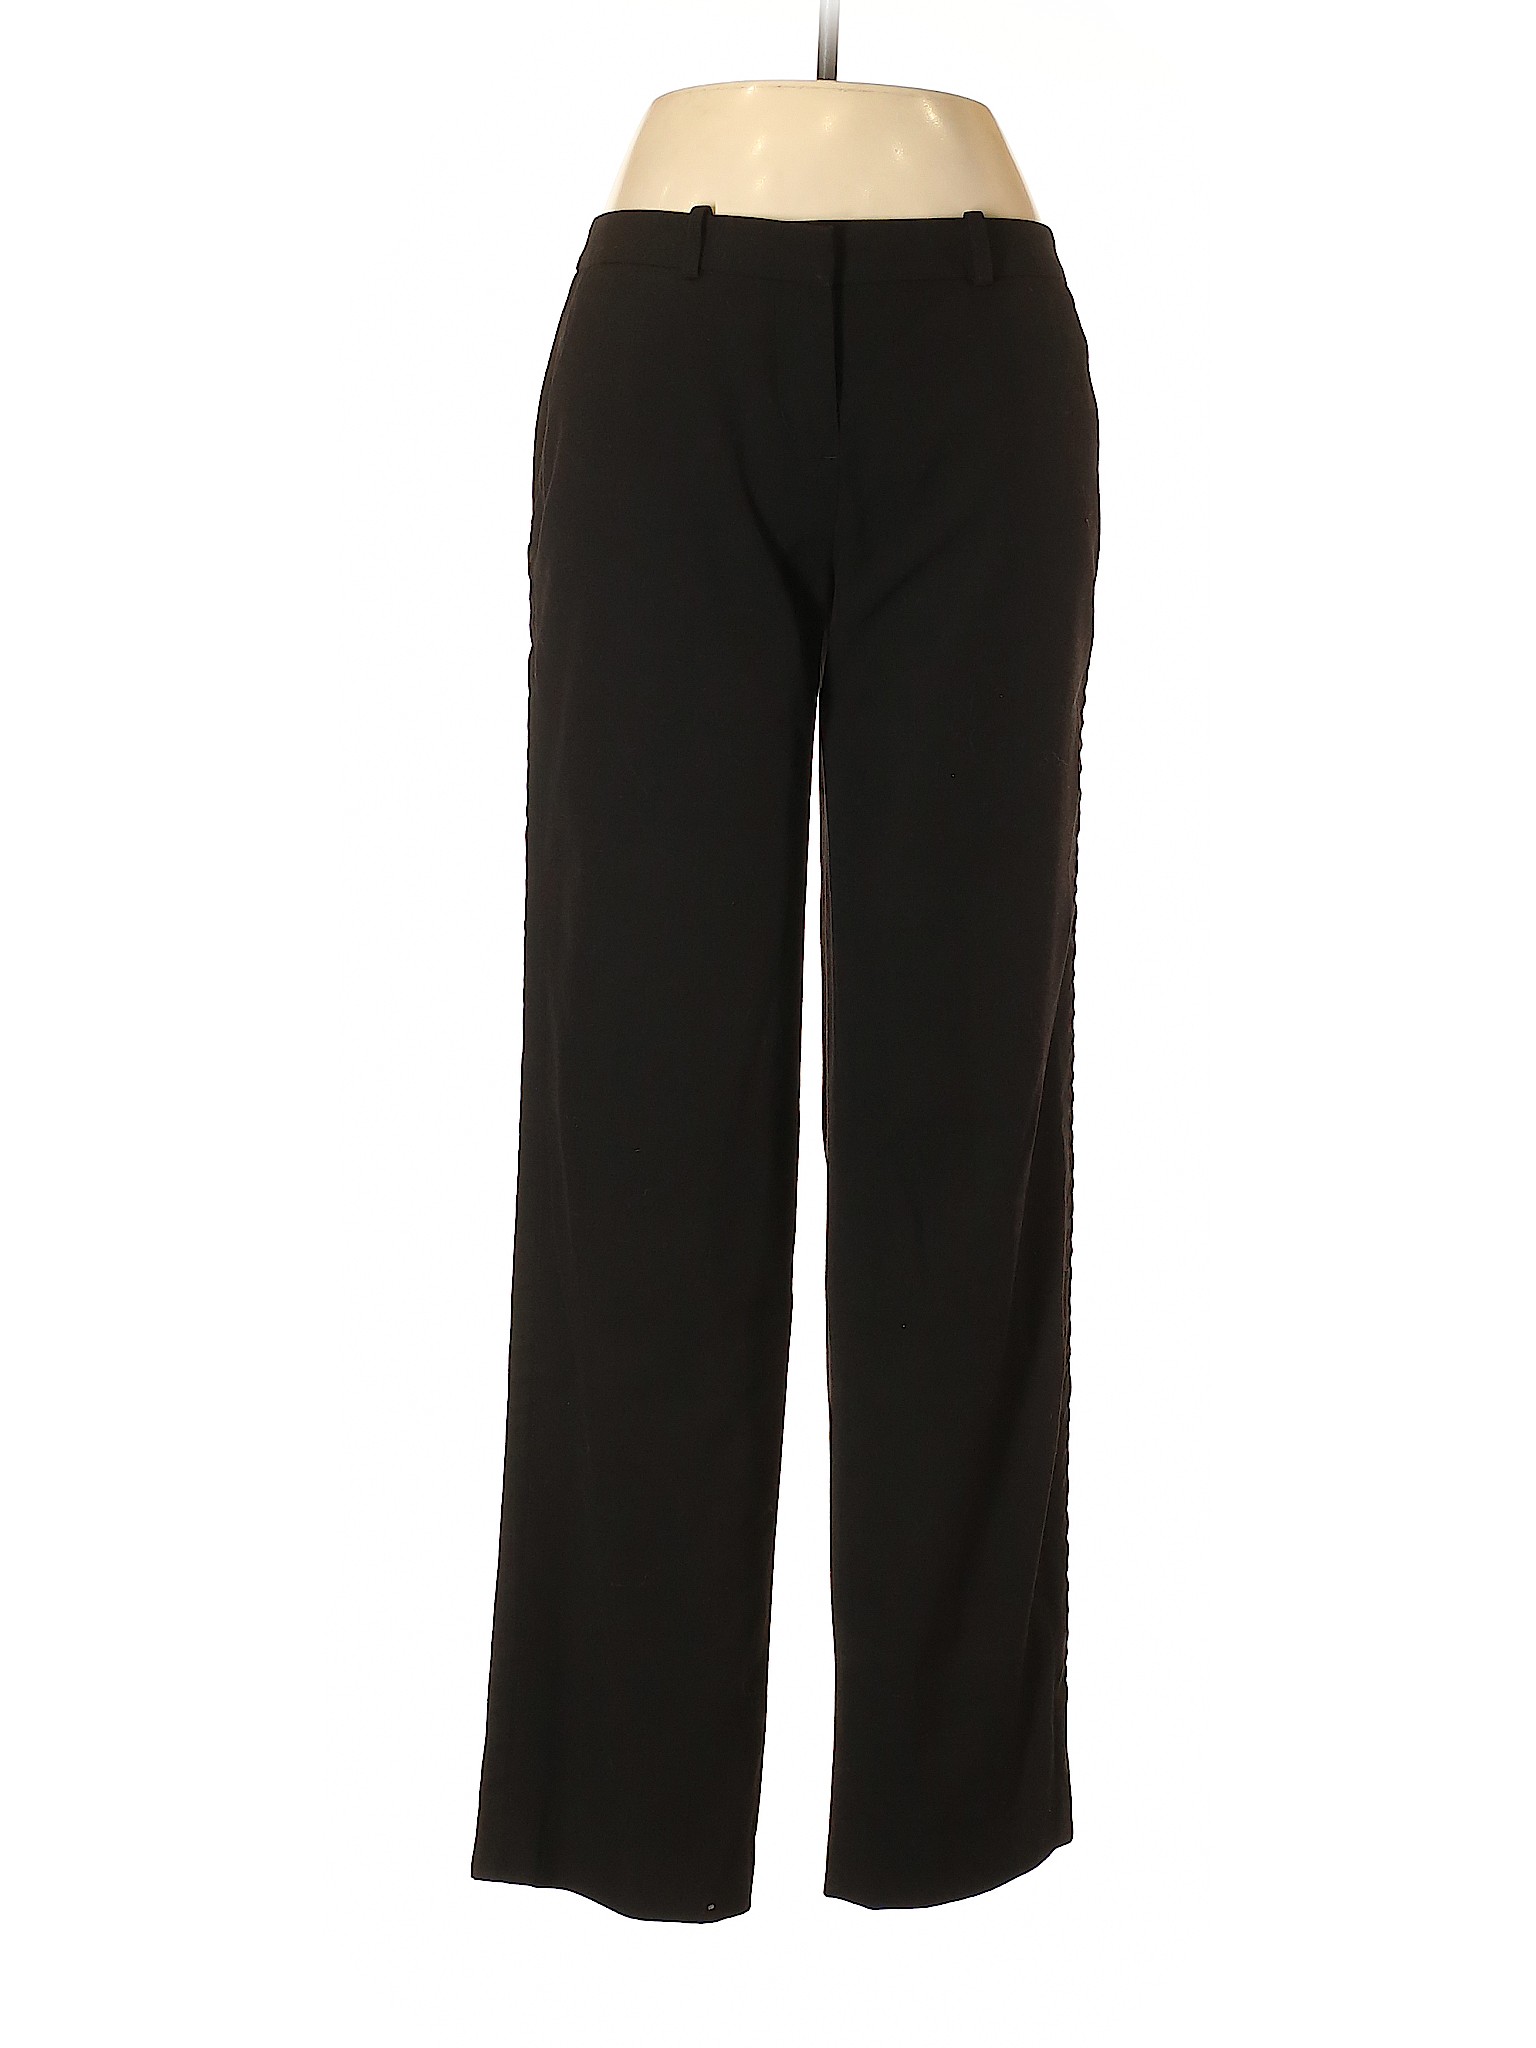 Simply Vera Vera Wang Women Black Dress Pants 6 | eBay